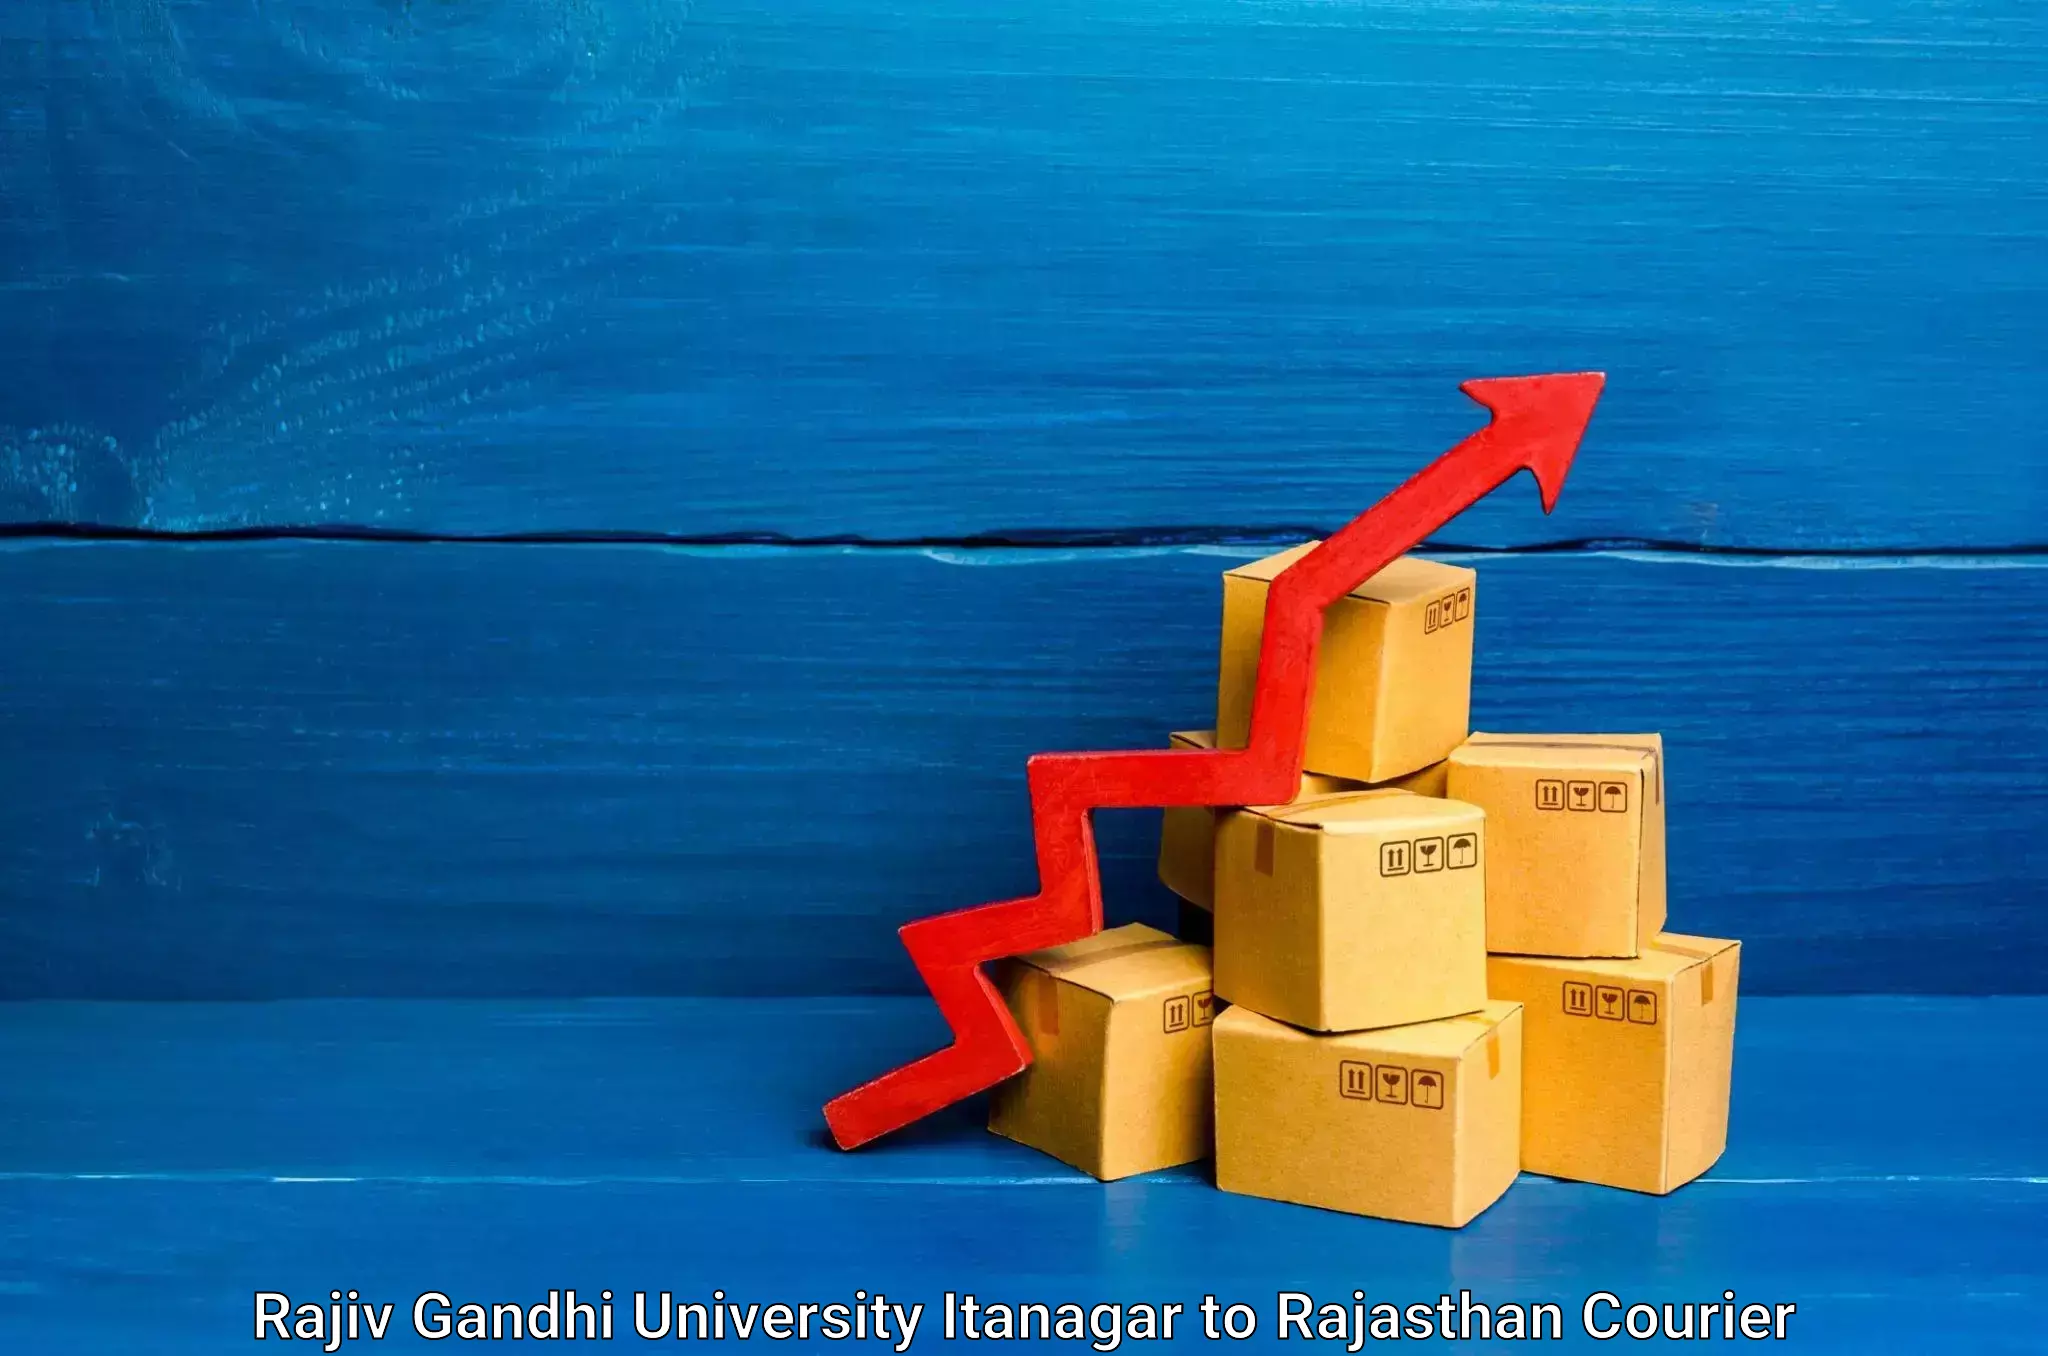 High-capacity parcel service Rajiv Gandhi University Itanagar to Sardarshahr